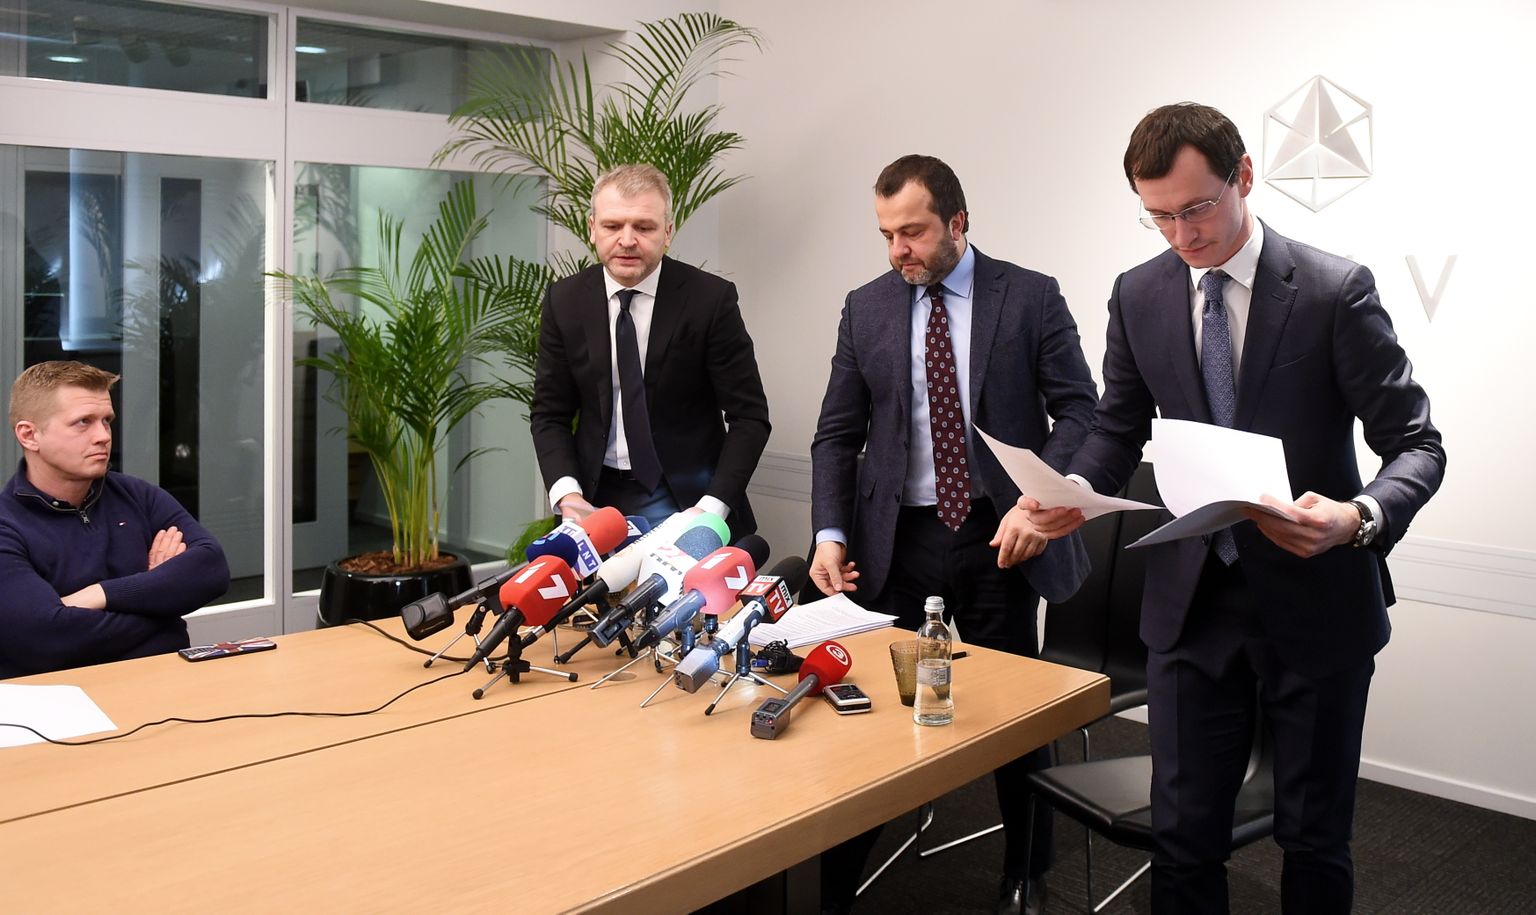 "ABLV Bank" līdzīpašnieks un padomes priekšsēdētājs Oļegs Fiļs (no kreisās), bankas valdes priekšsēdētājs Ernests Bernis un valdes priekšsēdētāja vietnieks Vadims Reinfelds